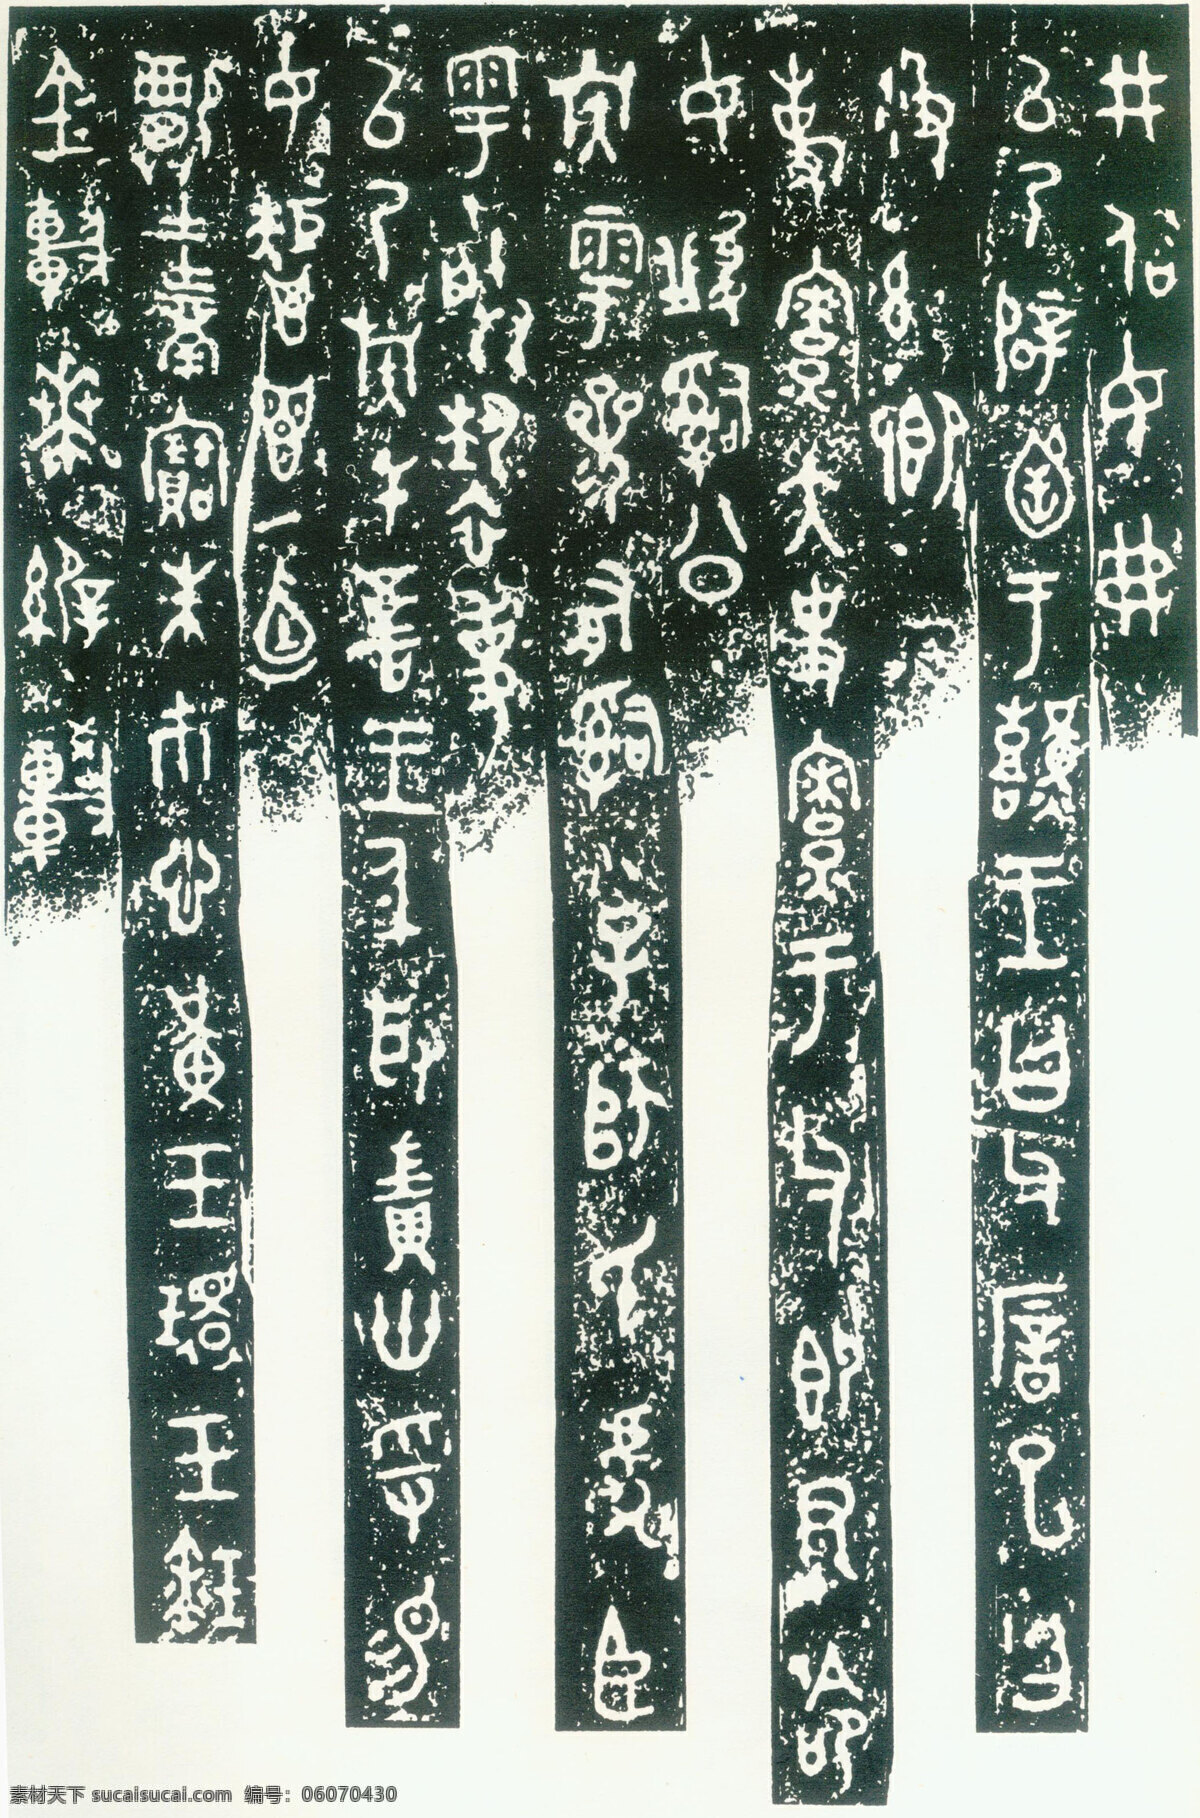 毛公鼎铭文 古汉字 书法0019 书法 设计素材 古汉字篇 书法世界 书画美术 白色